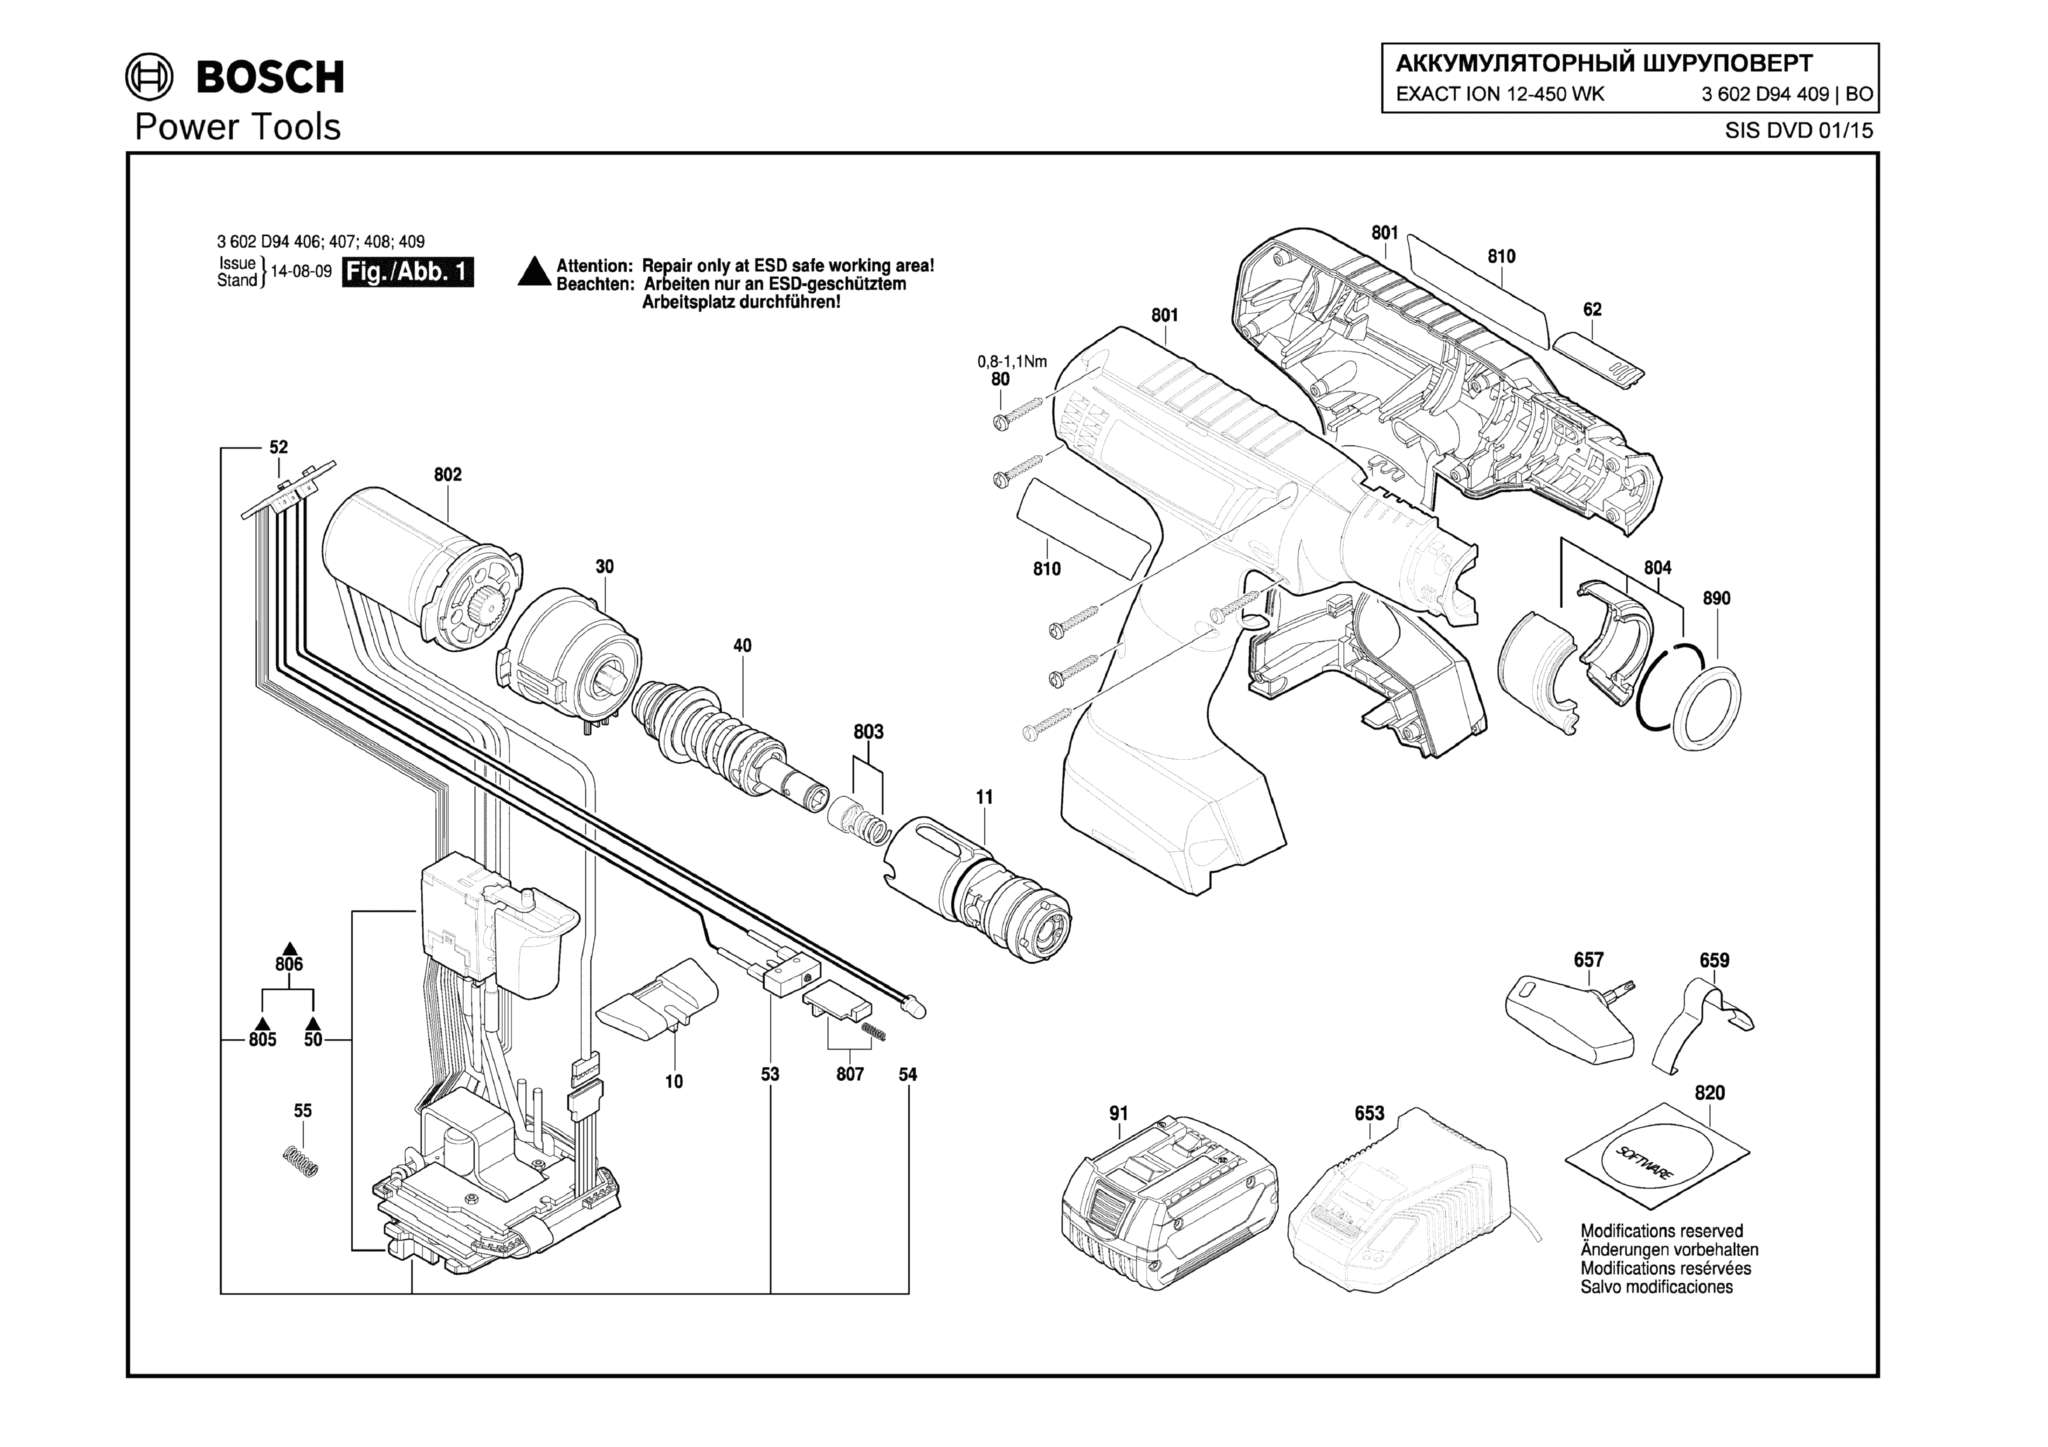 Запчасти, схема и деталировка Bosch EXACT ION 12-450 WK (ТИП 3602D94409)